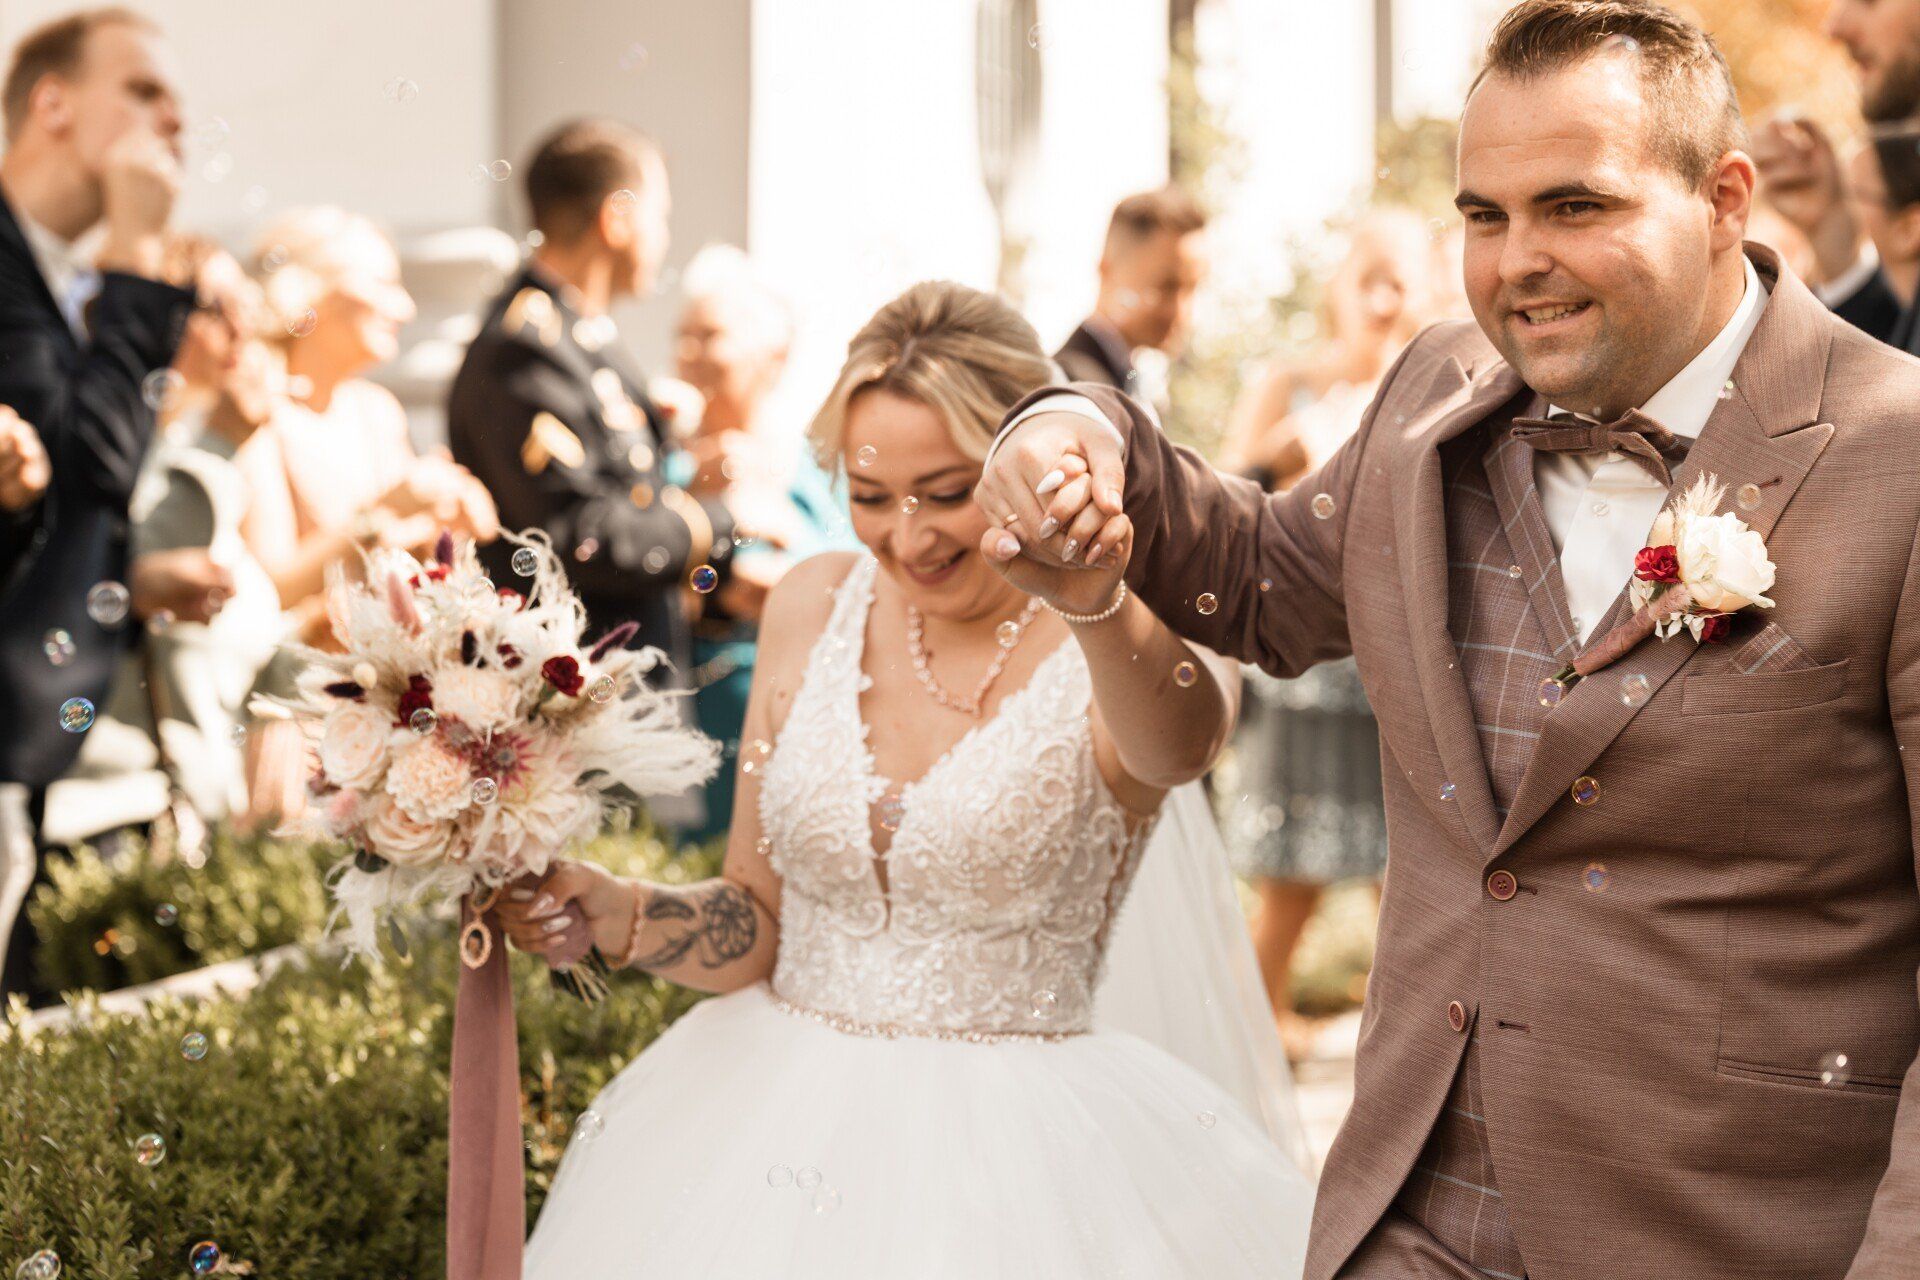 Auf diesem Foto sieht man die Braut beim jubelnden Auszug nach der Hochzeit